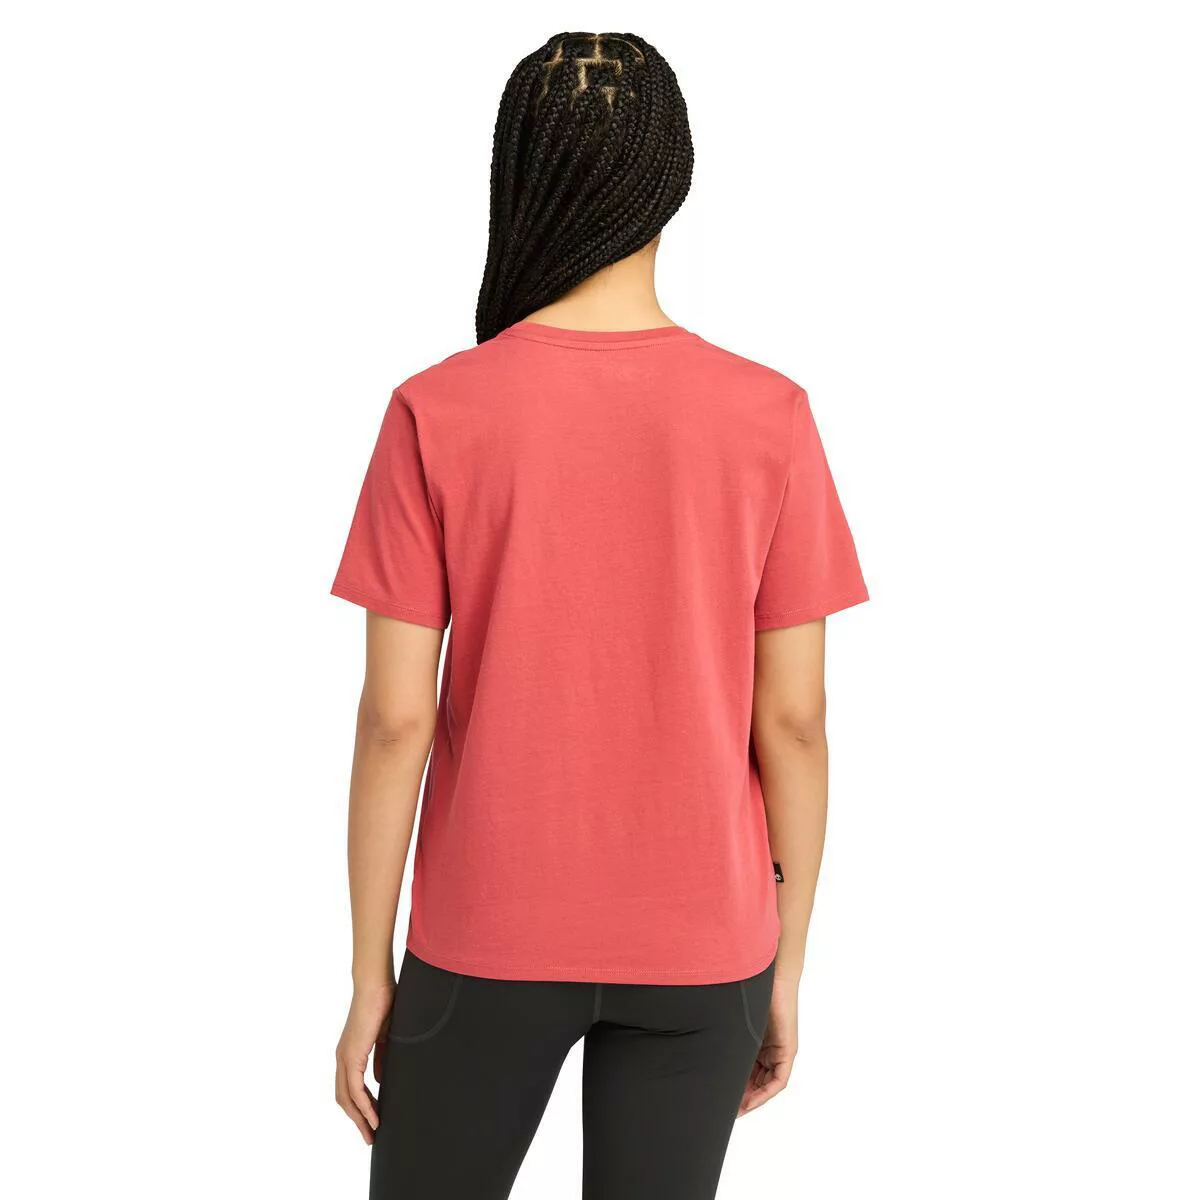 Timberland T-Shirt günstig online kaufen